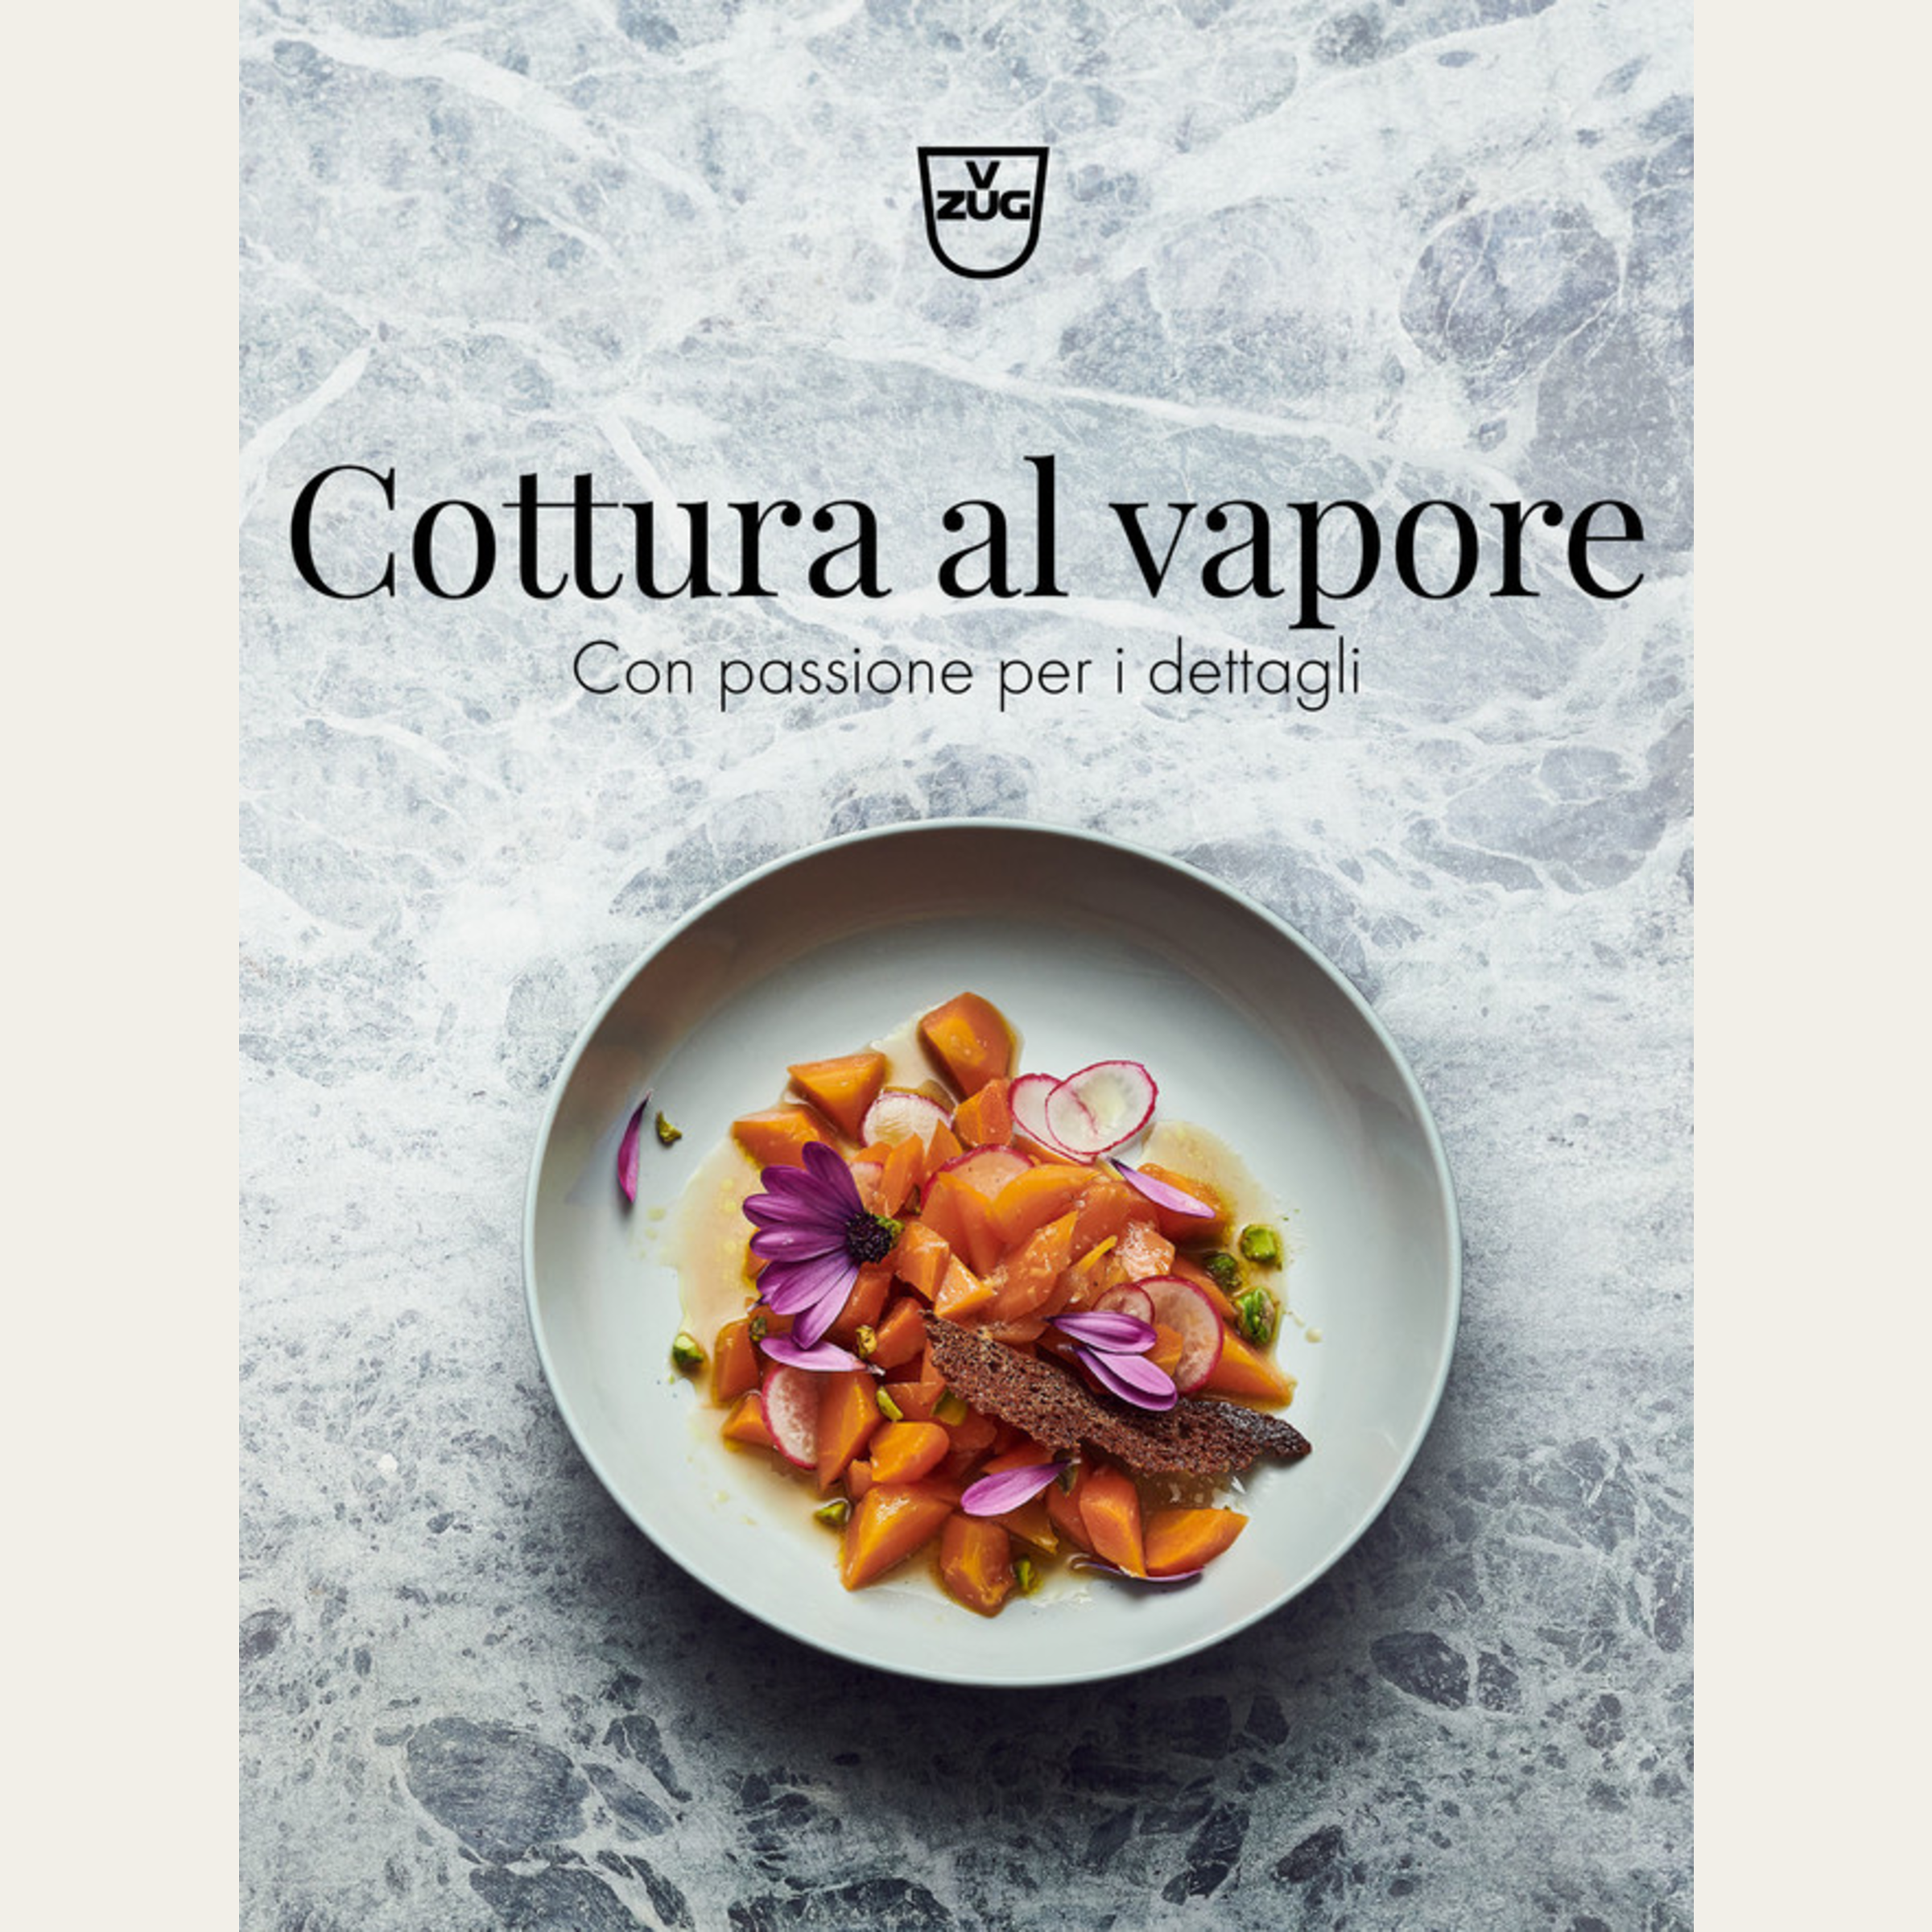 Ricettario “Cottura al vapore - Con passione per i dettagli” in italiano